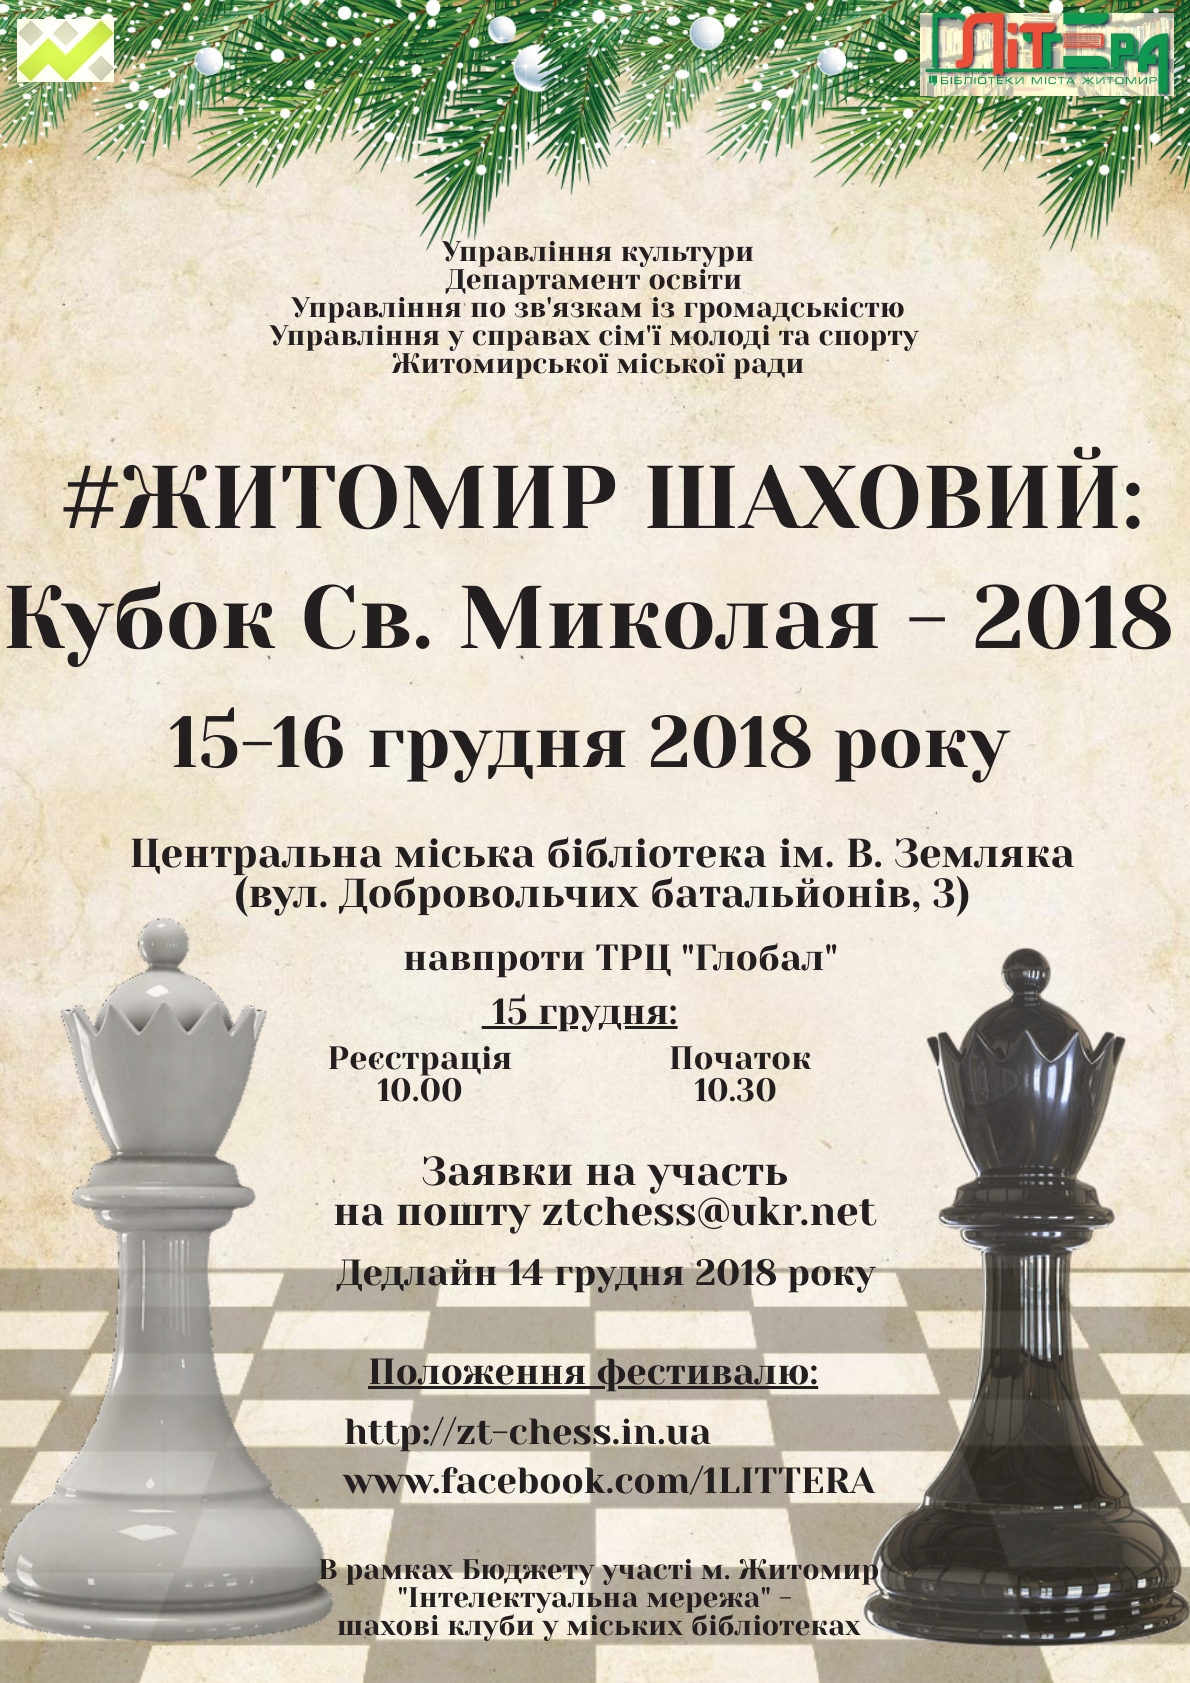 У рамках проекту Бюджету участі «Інтелектуальна мережа» - шахові клуби в міських бібліотеках»  відбудеться шаховий фестиваль 